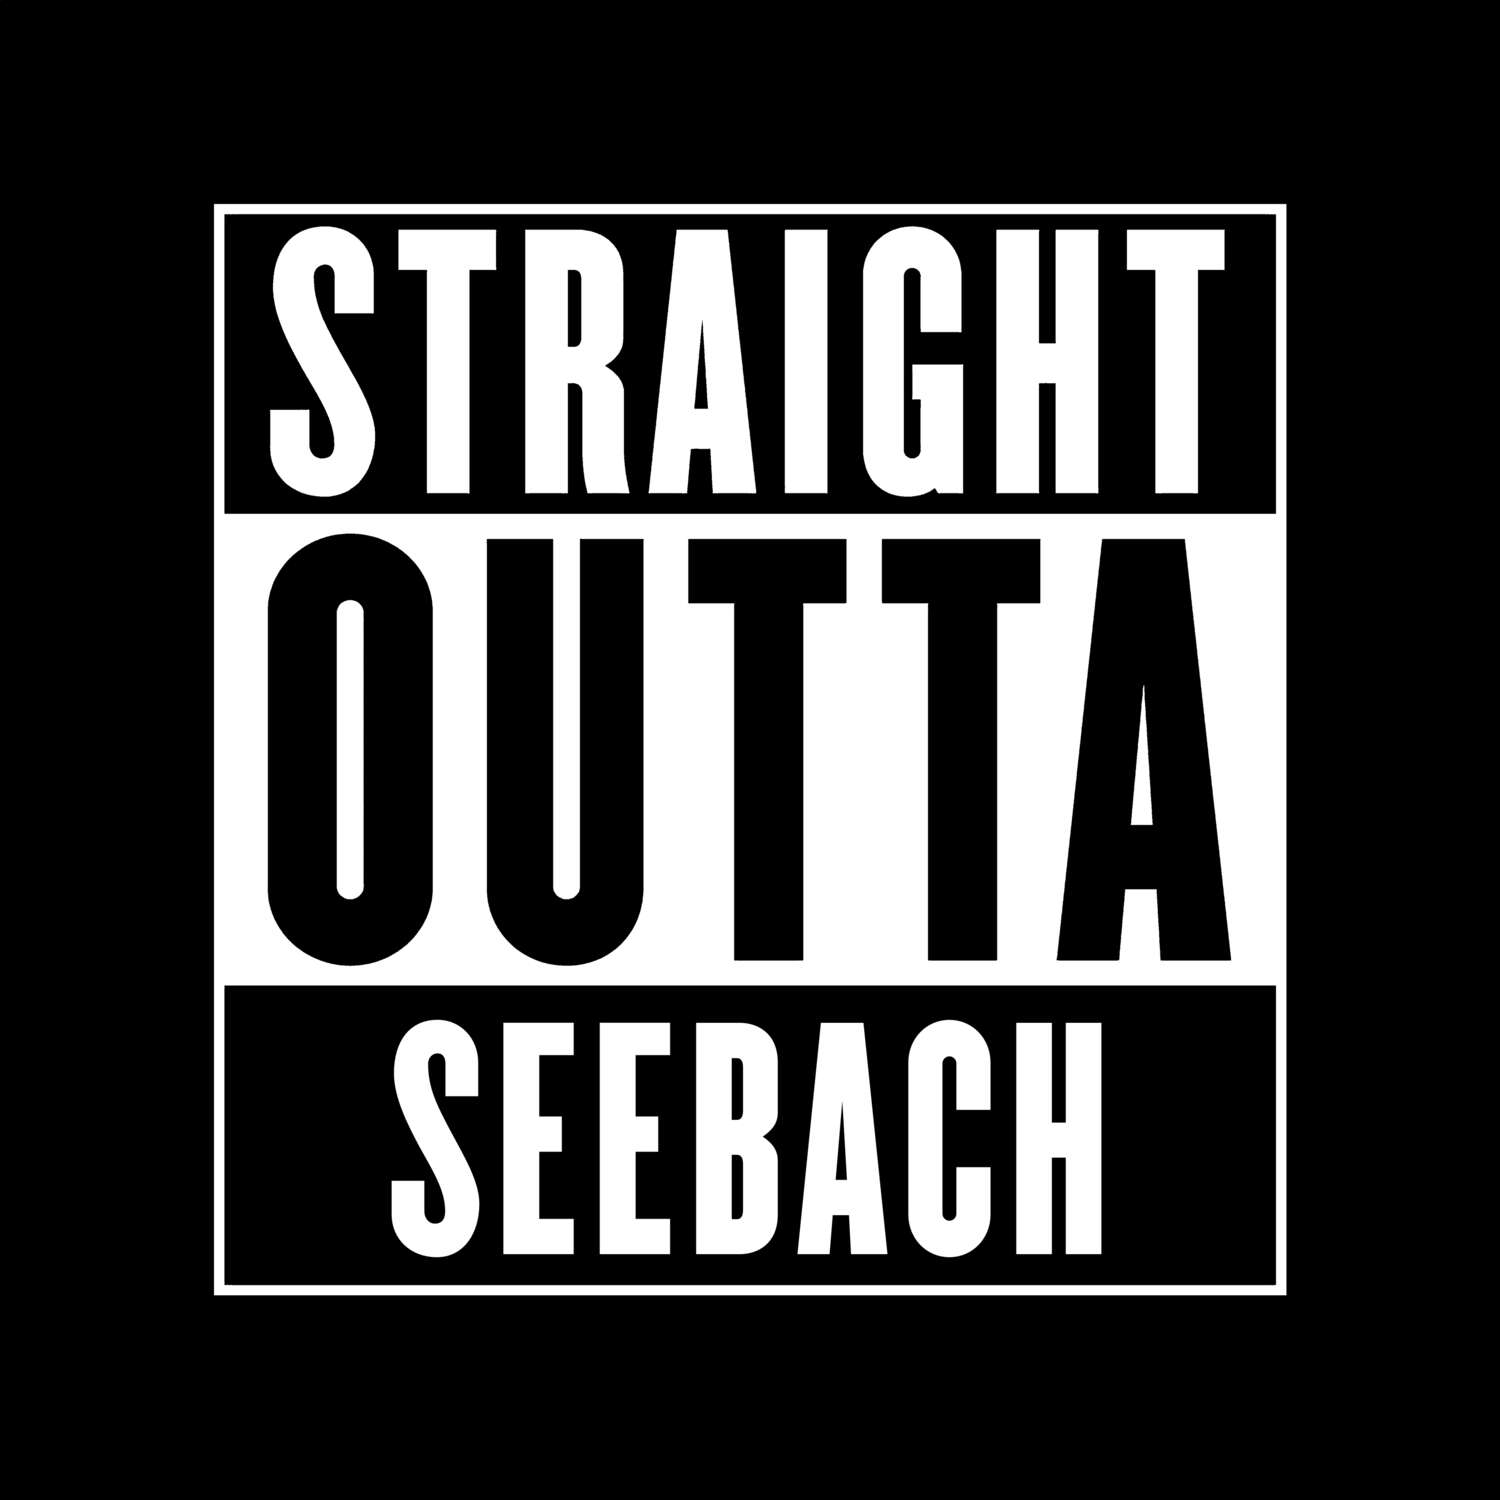 Seebach T-Shirt »Straight Outta«